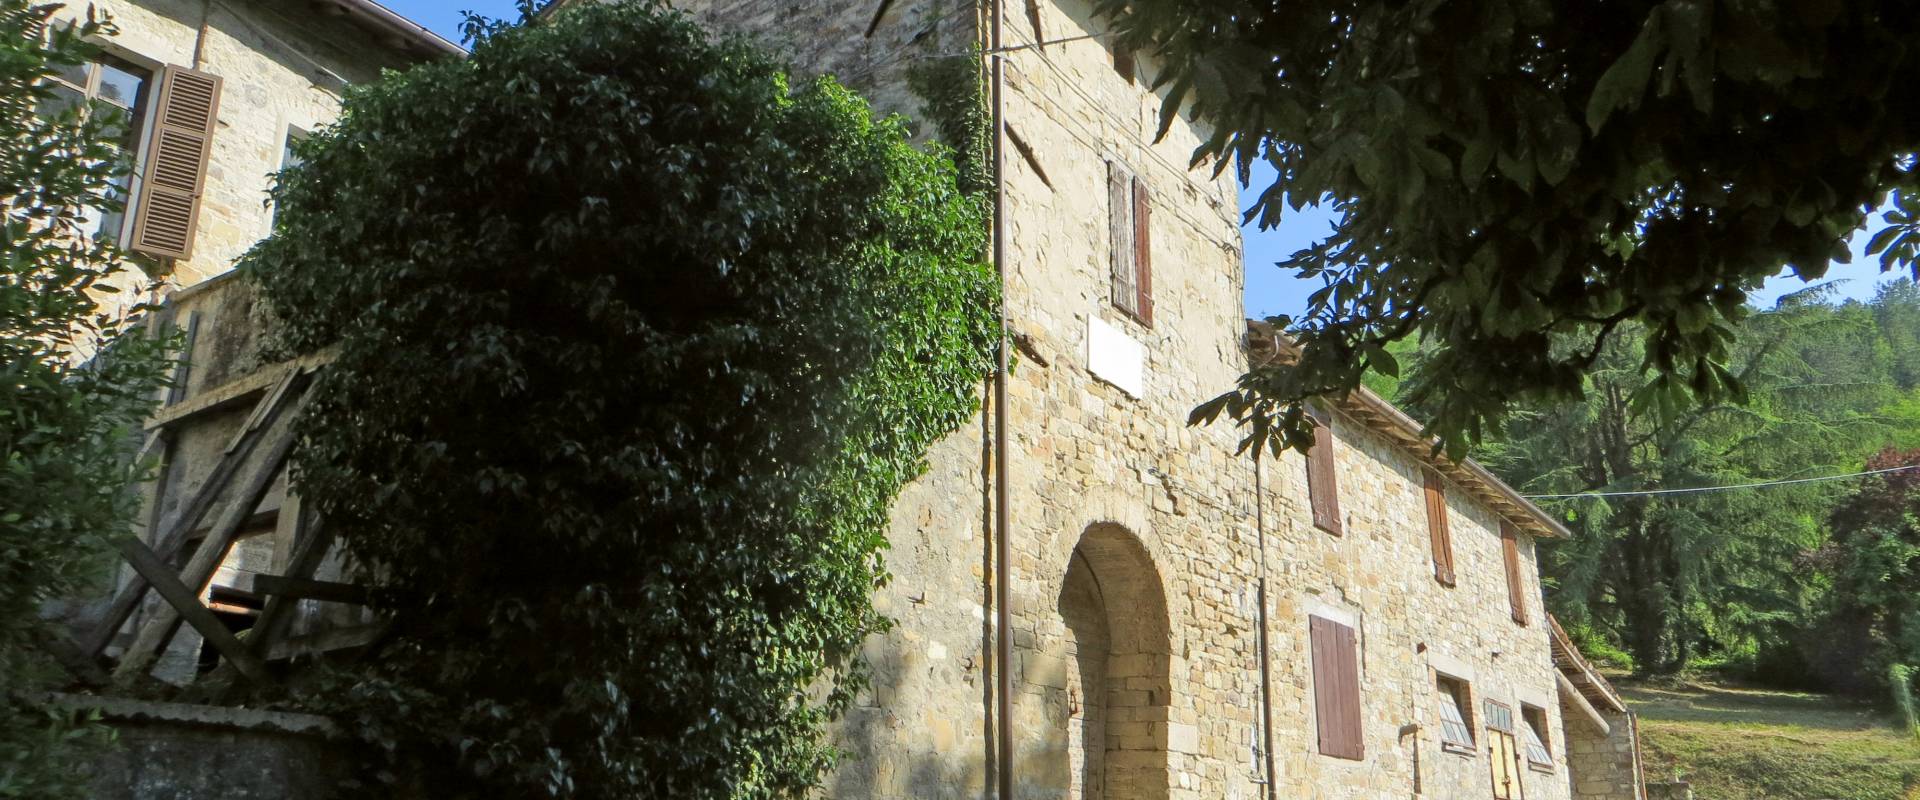 Abbazia di San Basilide (San Michele Cavana, Lesignano de' Bagni) - facciata del monastero 1 2019-06-26 foto di Parma198